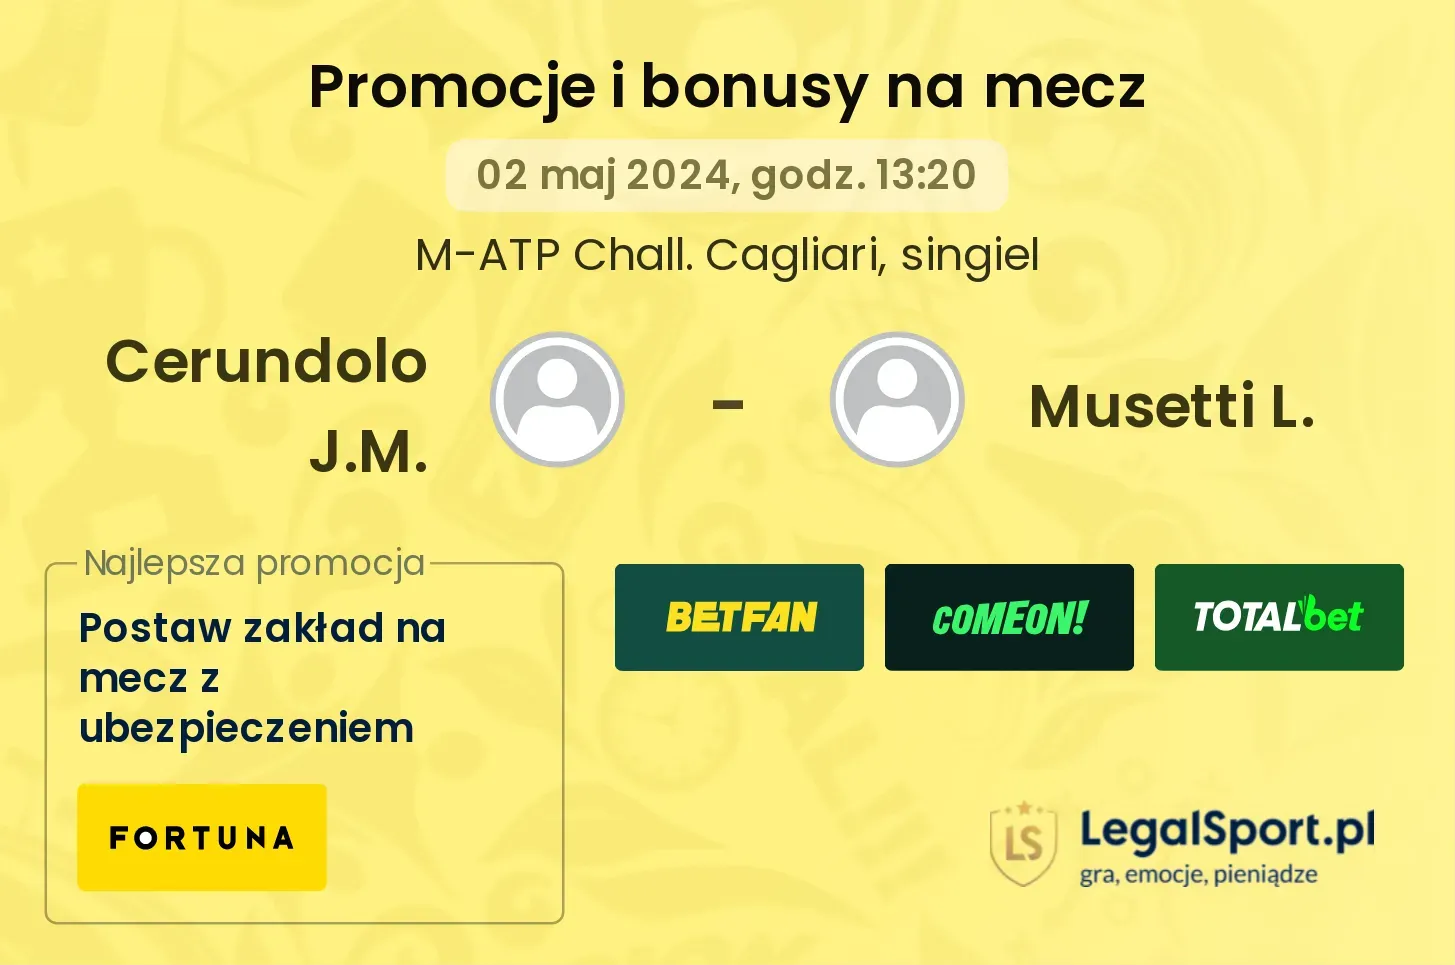 Cerundolo J.M. - Musetti L. promocje bonusy na mecz